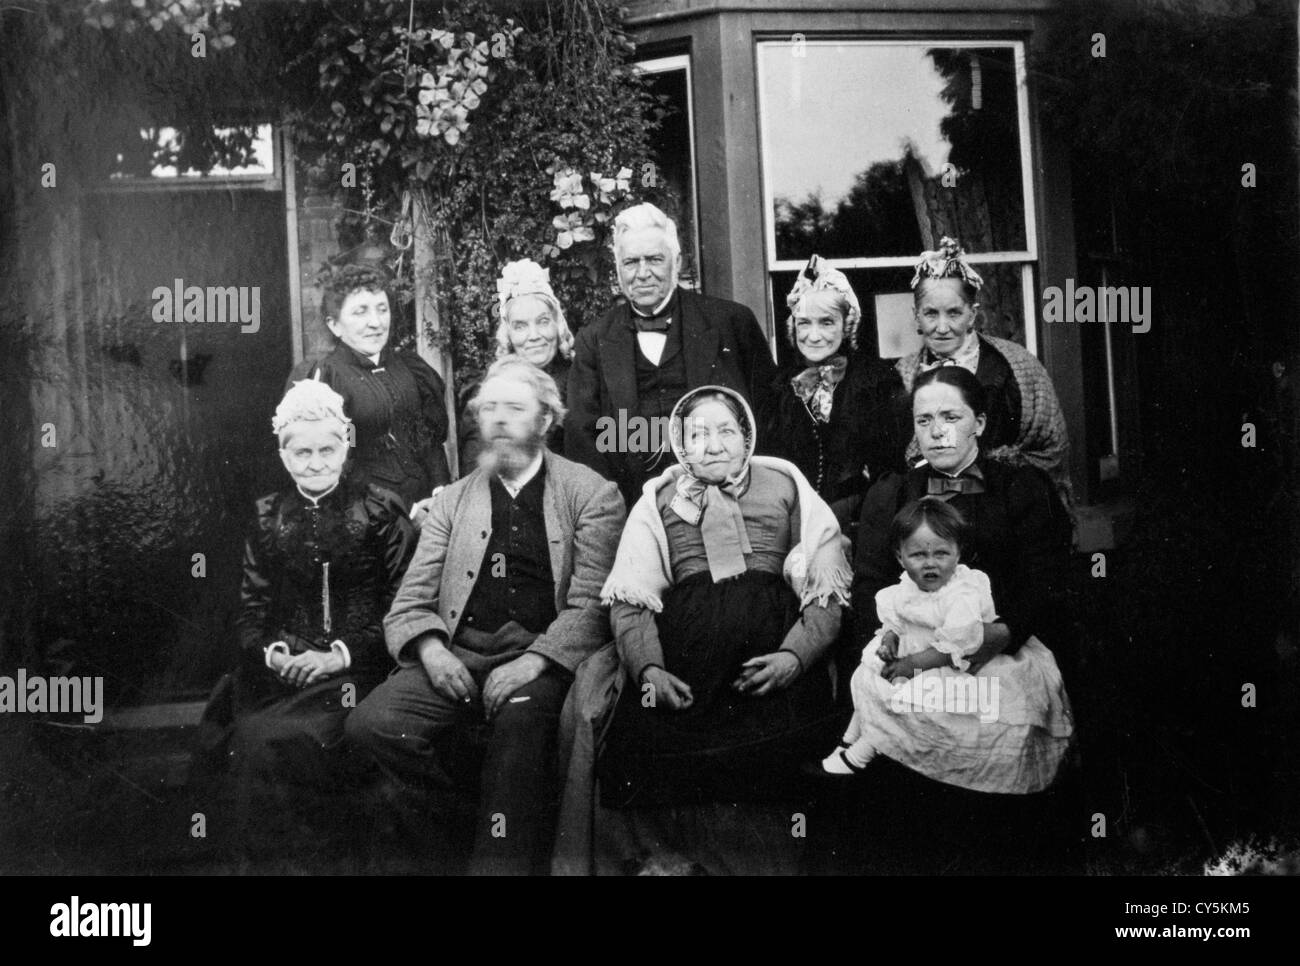 Viktorianische Familiengruppe Fotografien Birmingham UK 1890er. Neun Mitglieder der gleichen Familie und ihre Familie Mitarbeiter Halter. Sie waren Holzhändler in Birmingham, die während der industriellen Revolution aus Huddersfield Yorkshire gezogen waren, wo sie eine Schule hatten und Tuchhändler waren. Verwandte dieses Inhaltslieferanten. HOMER SYKES Stockfoto